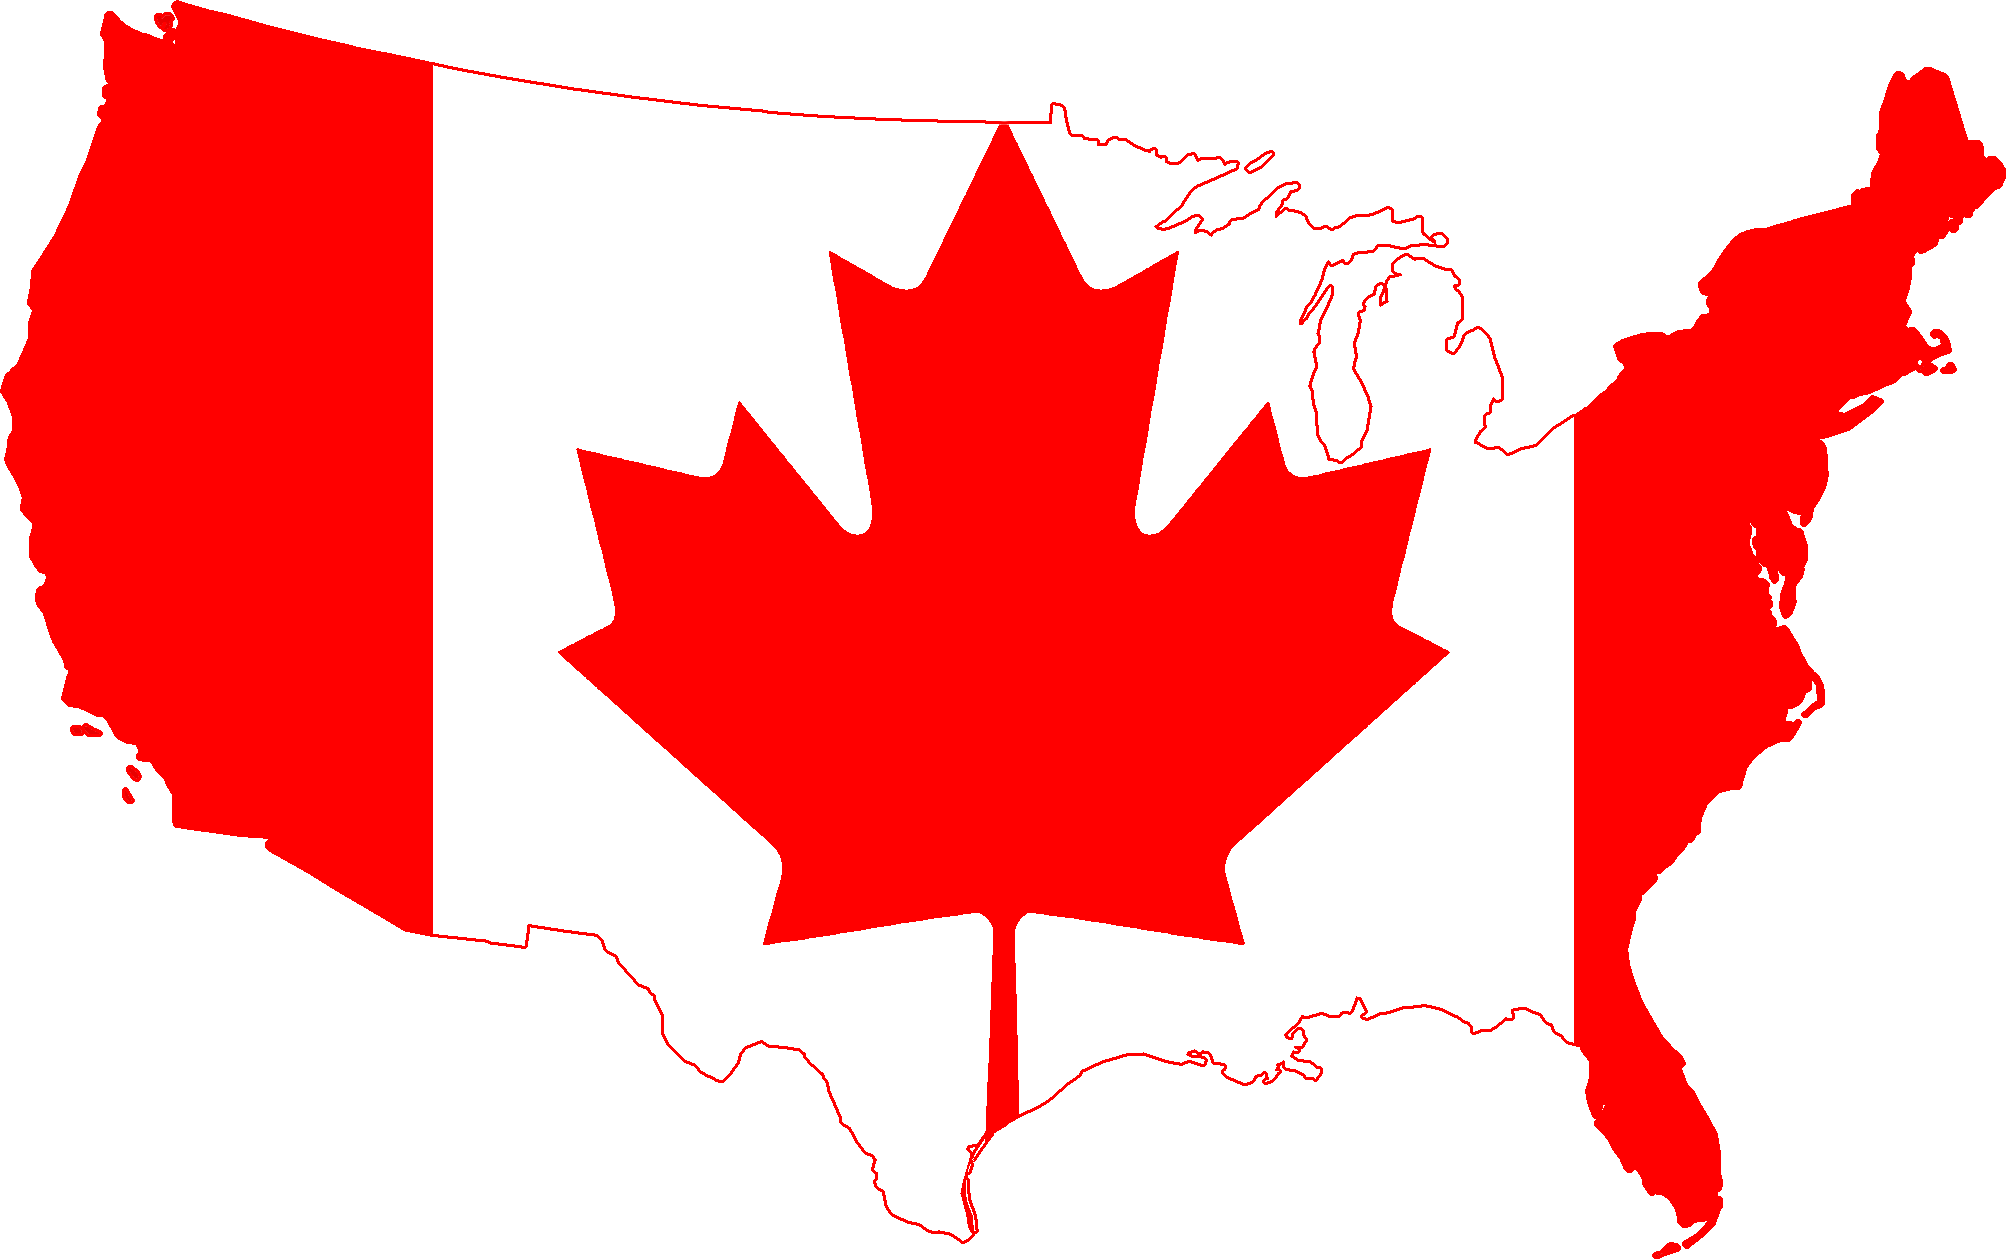 خانه شیشه ای کانادا,خانه کانادا,خانه های کانادا, خانه شیشه ای باسول کانادا,اقامت در خانه شیشه ای کانادا,باسول کانادا ,کانادا و خانه شیشه ای